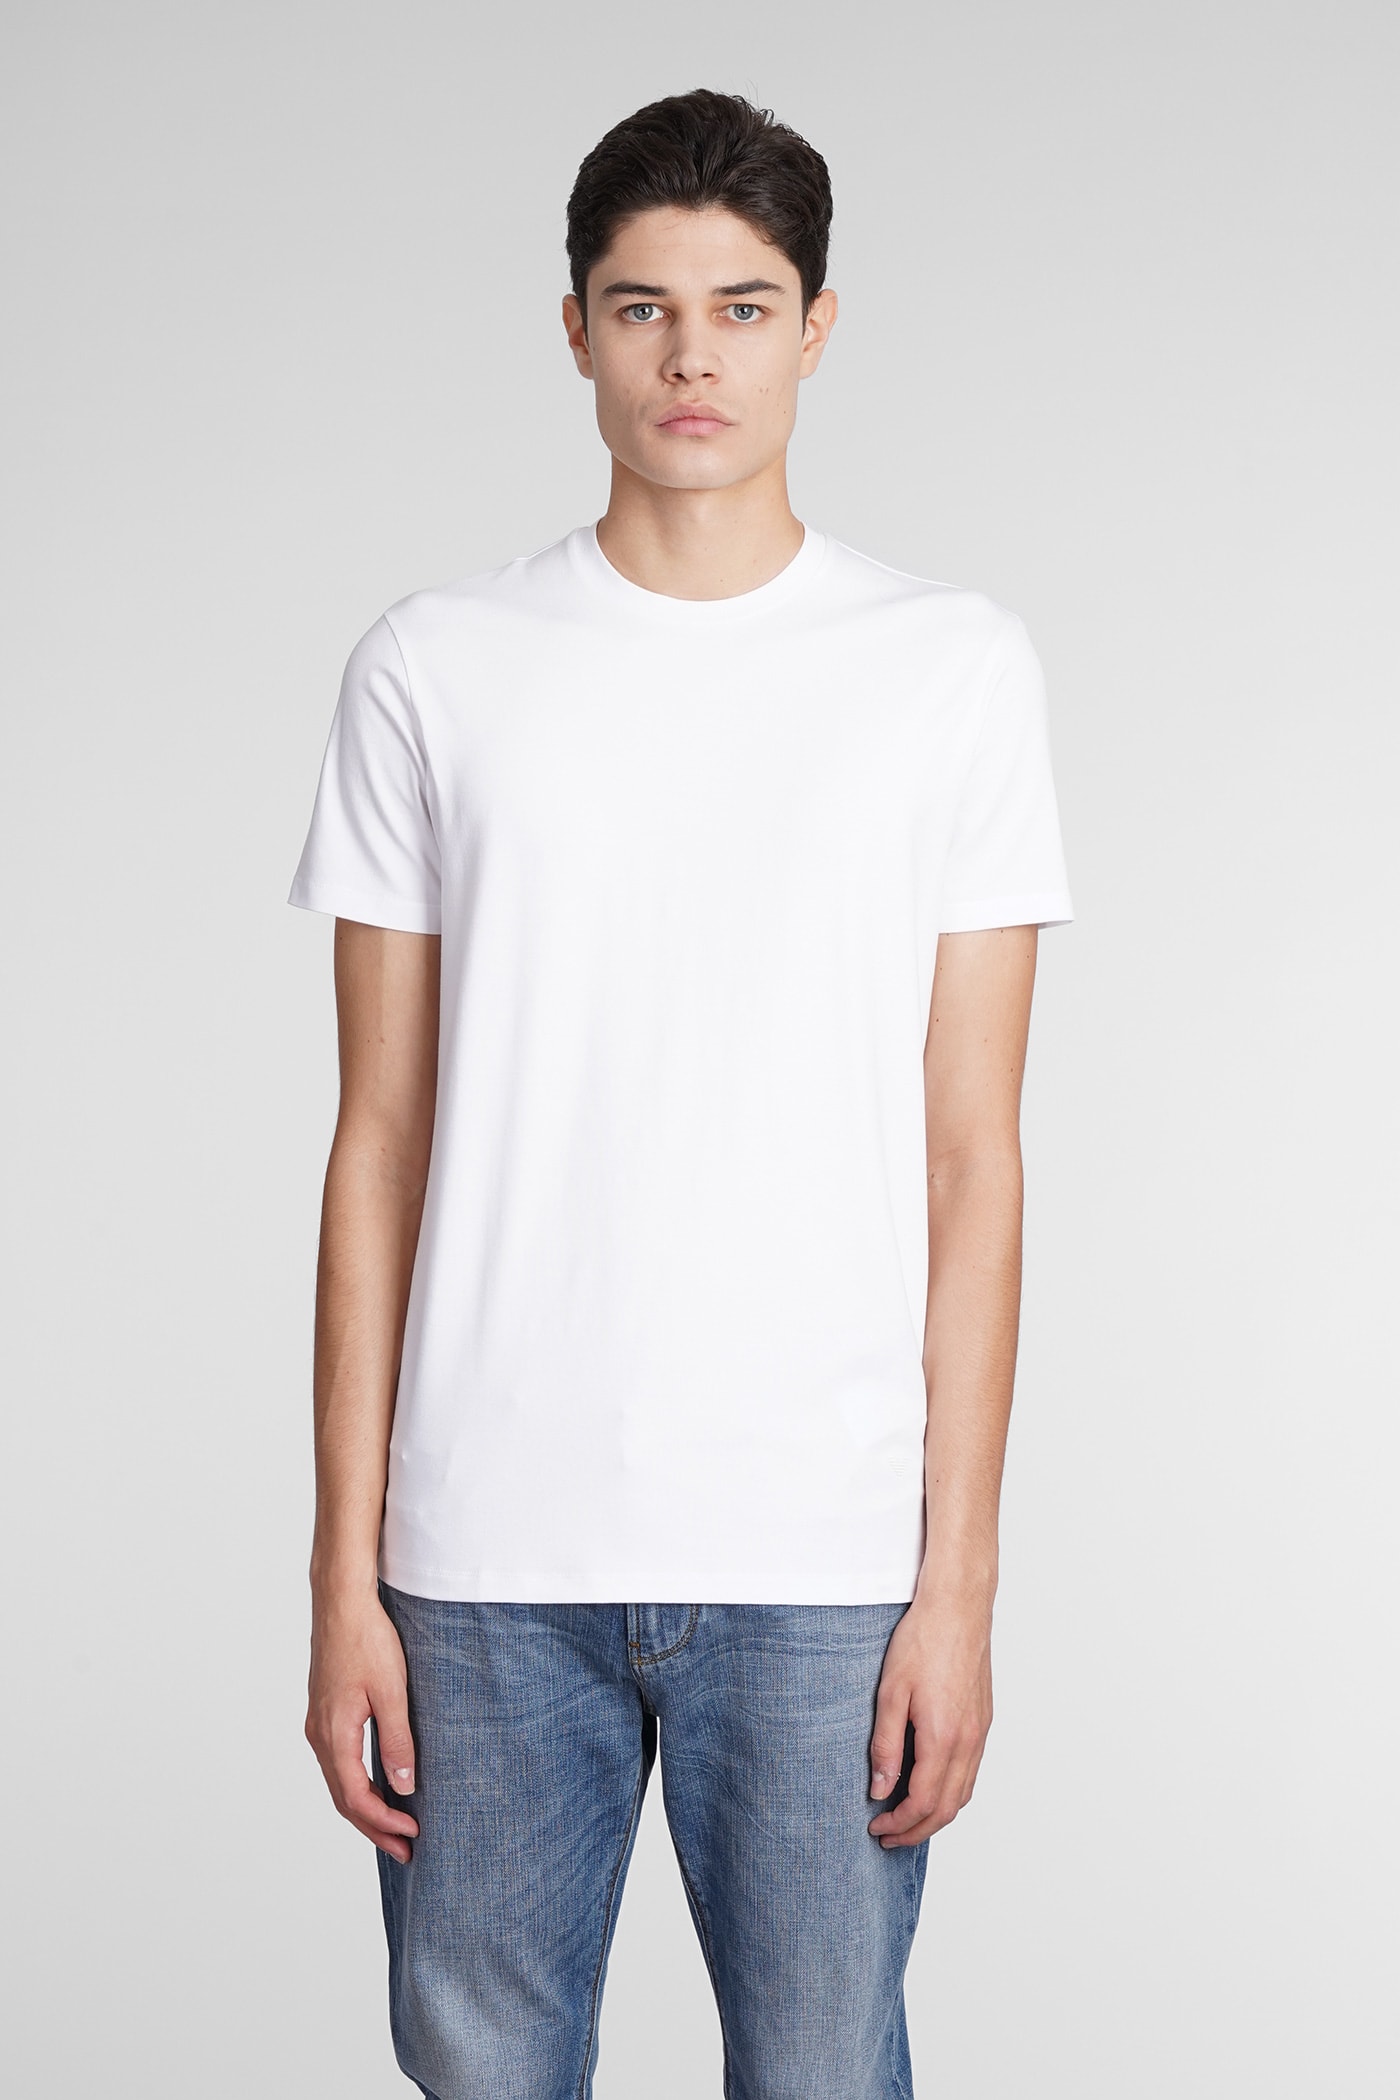 Emporio Armani T-shirt In White Viscose